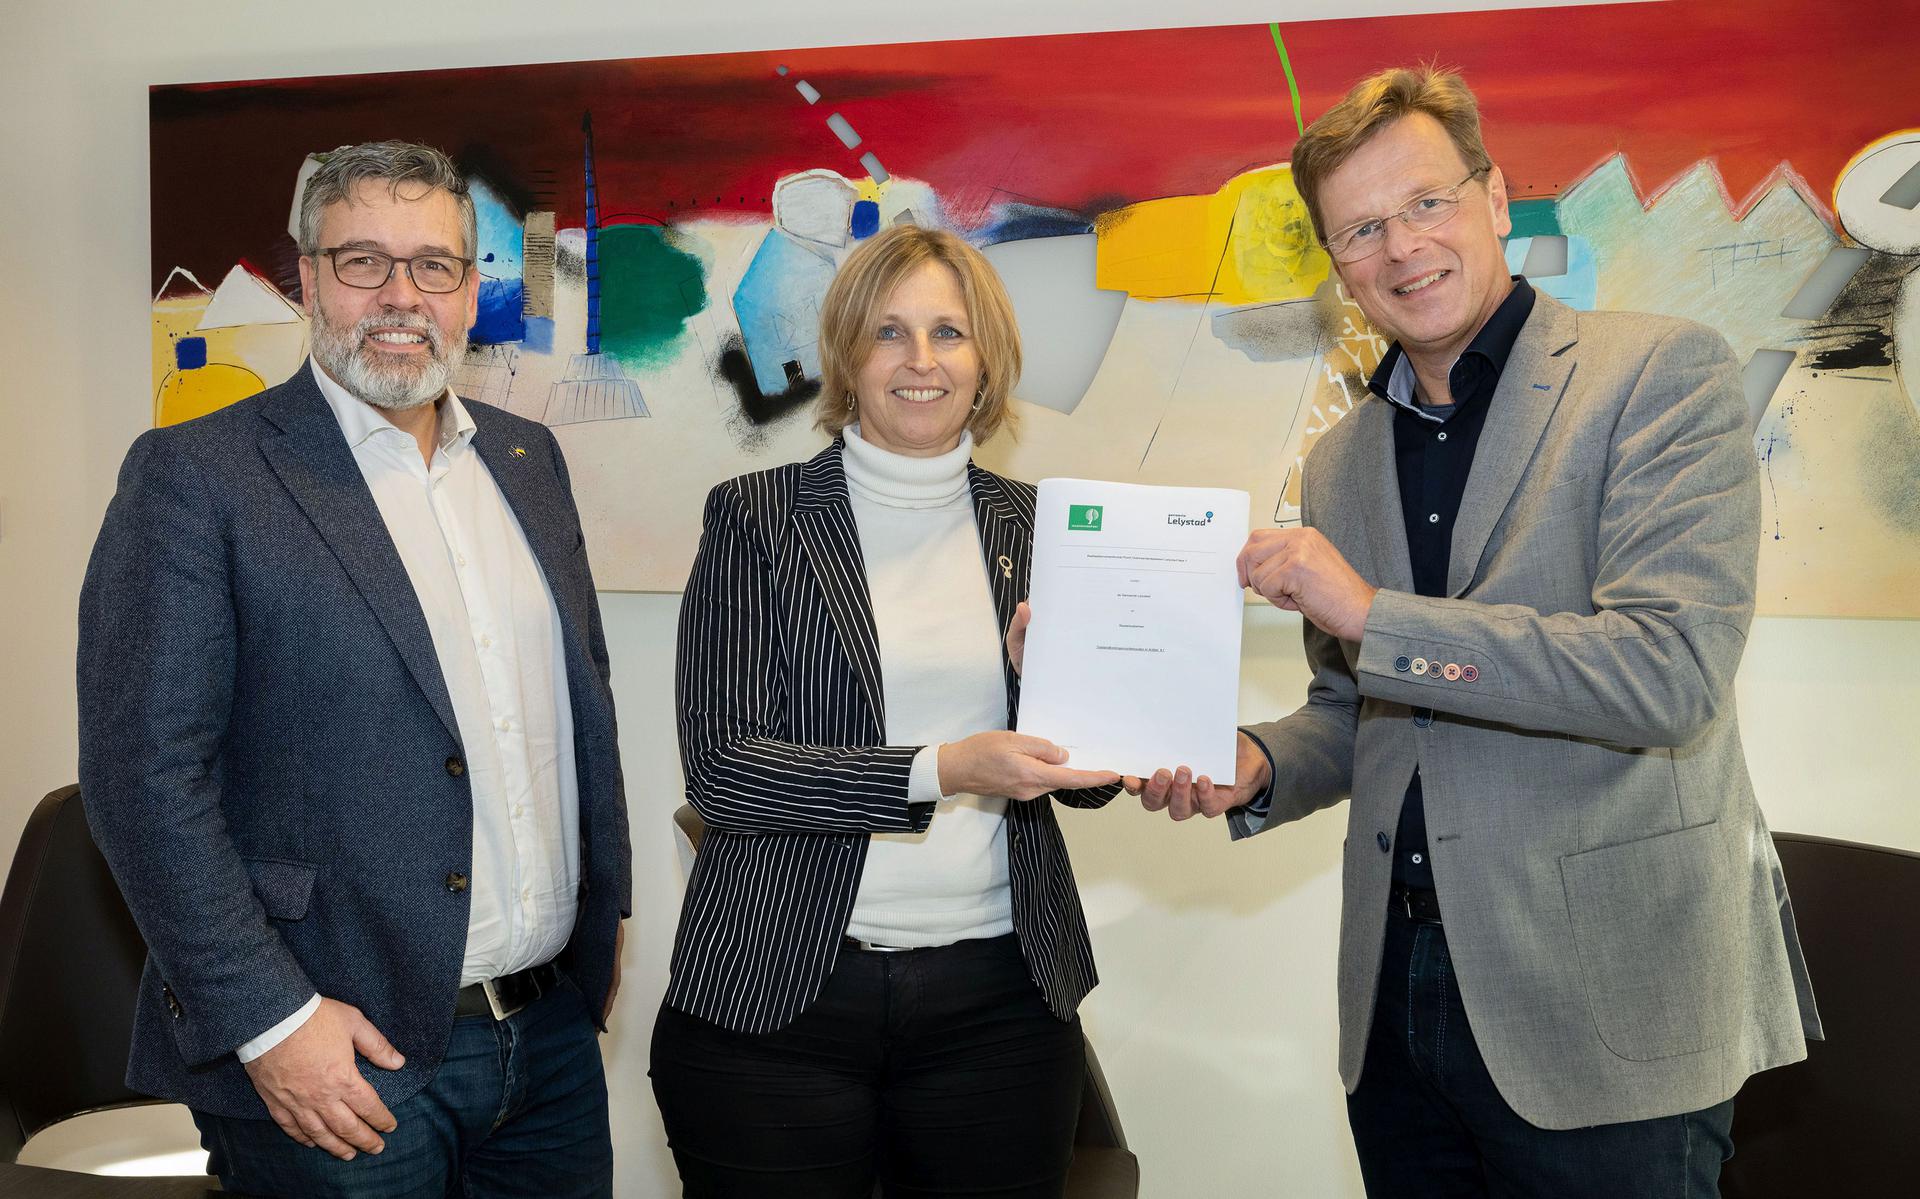 De realisatieovereenkomst werd onlangs getekend door (van links naar rechts): Michiel Rijsberman, Annemieke Messelink-Dijkstra en Wout Neutel.